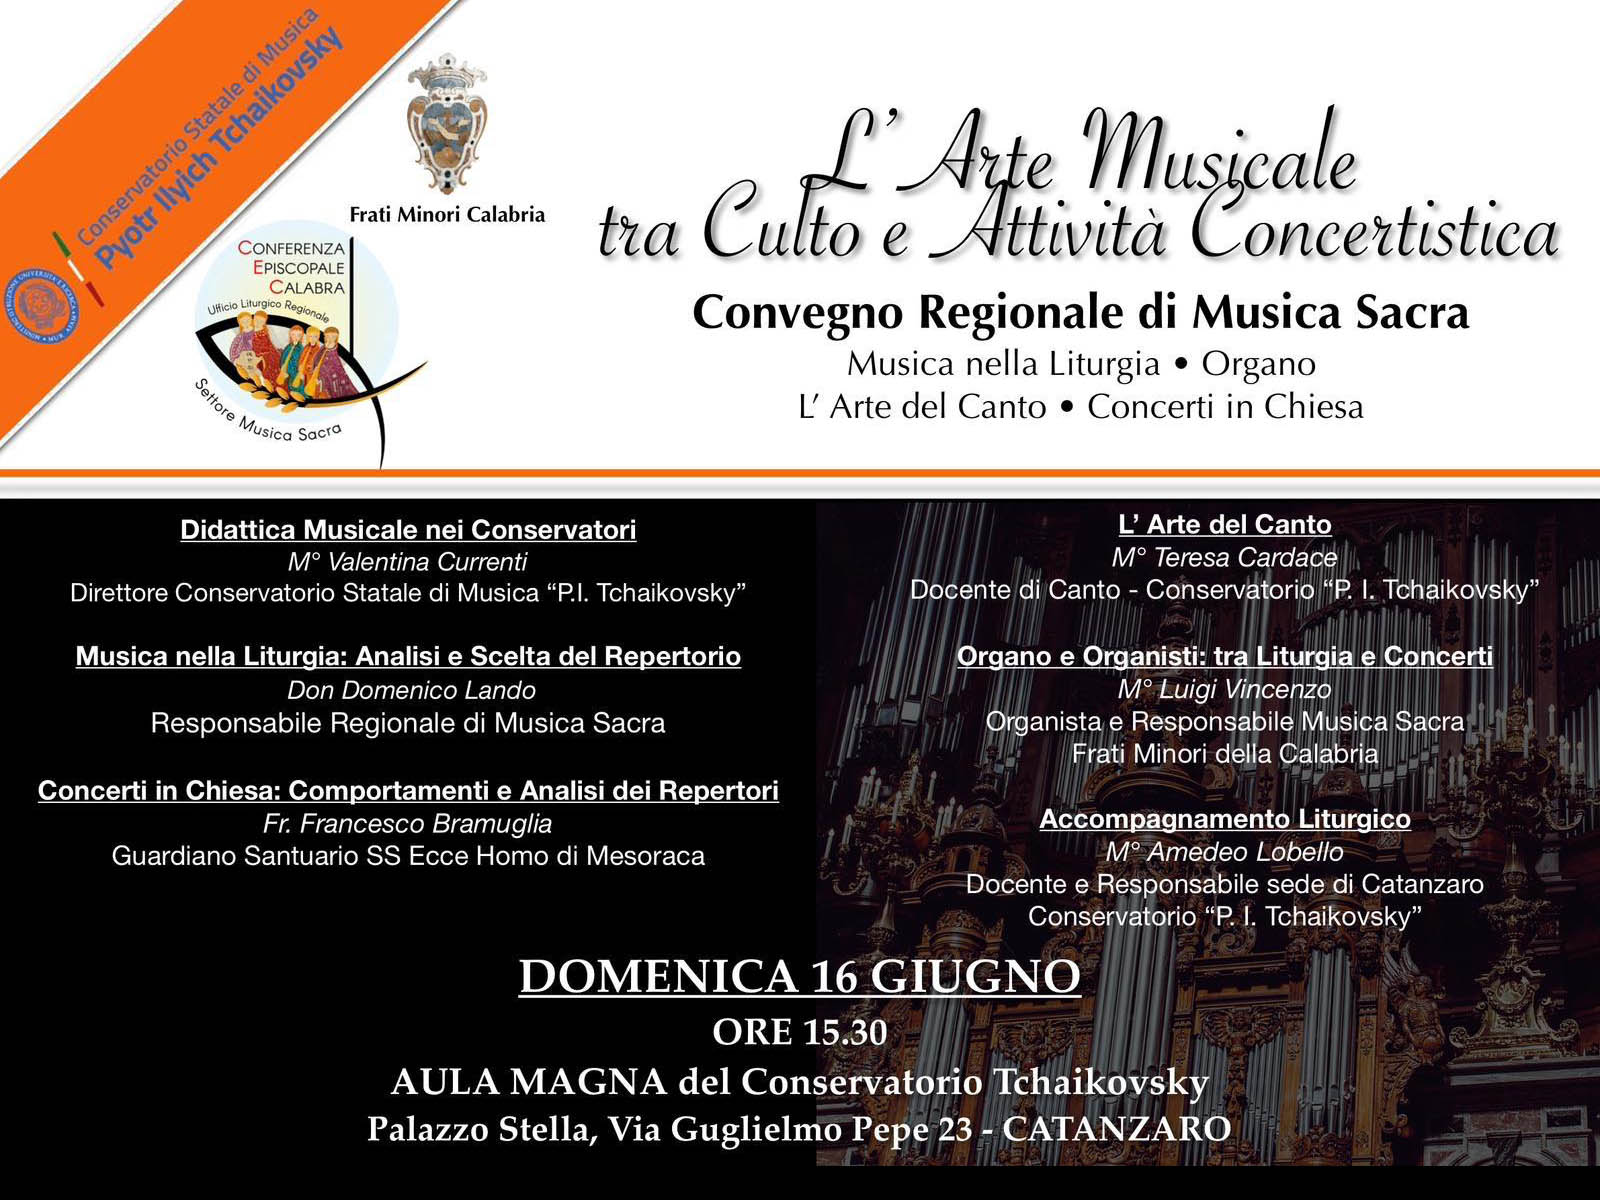 Locandina del 16 giugno per il convegno regionale di musica sacra.